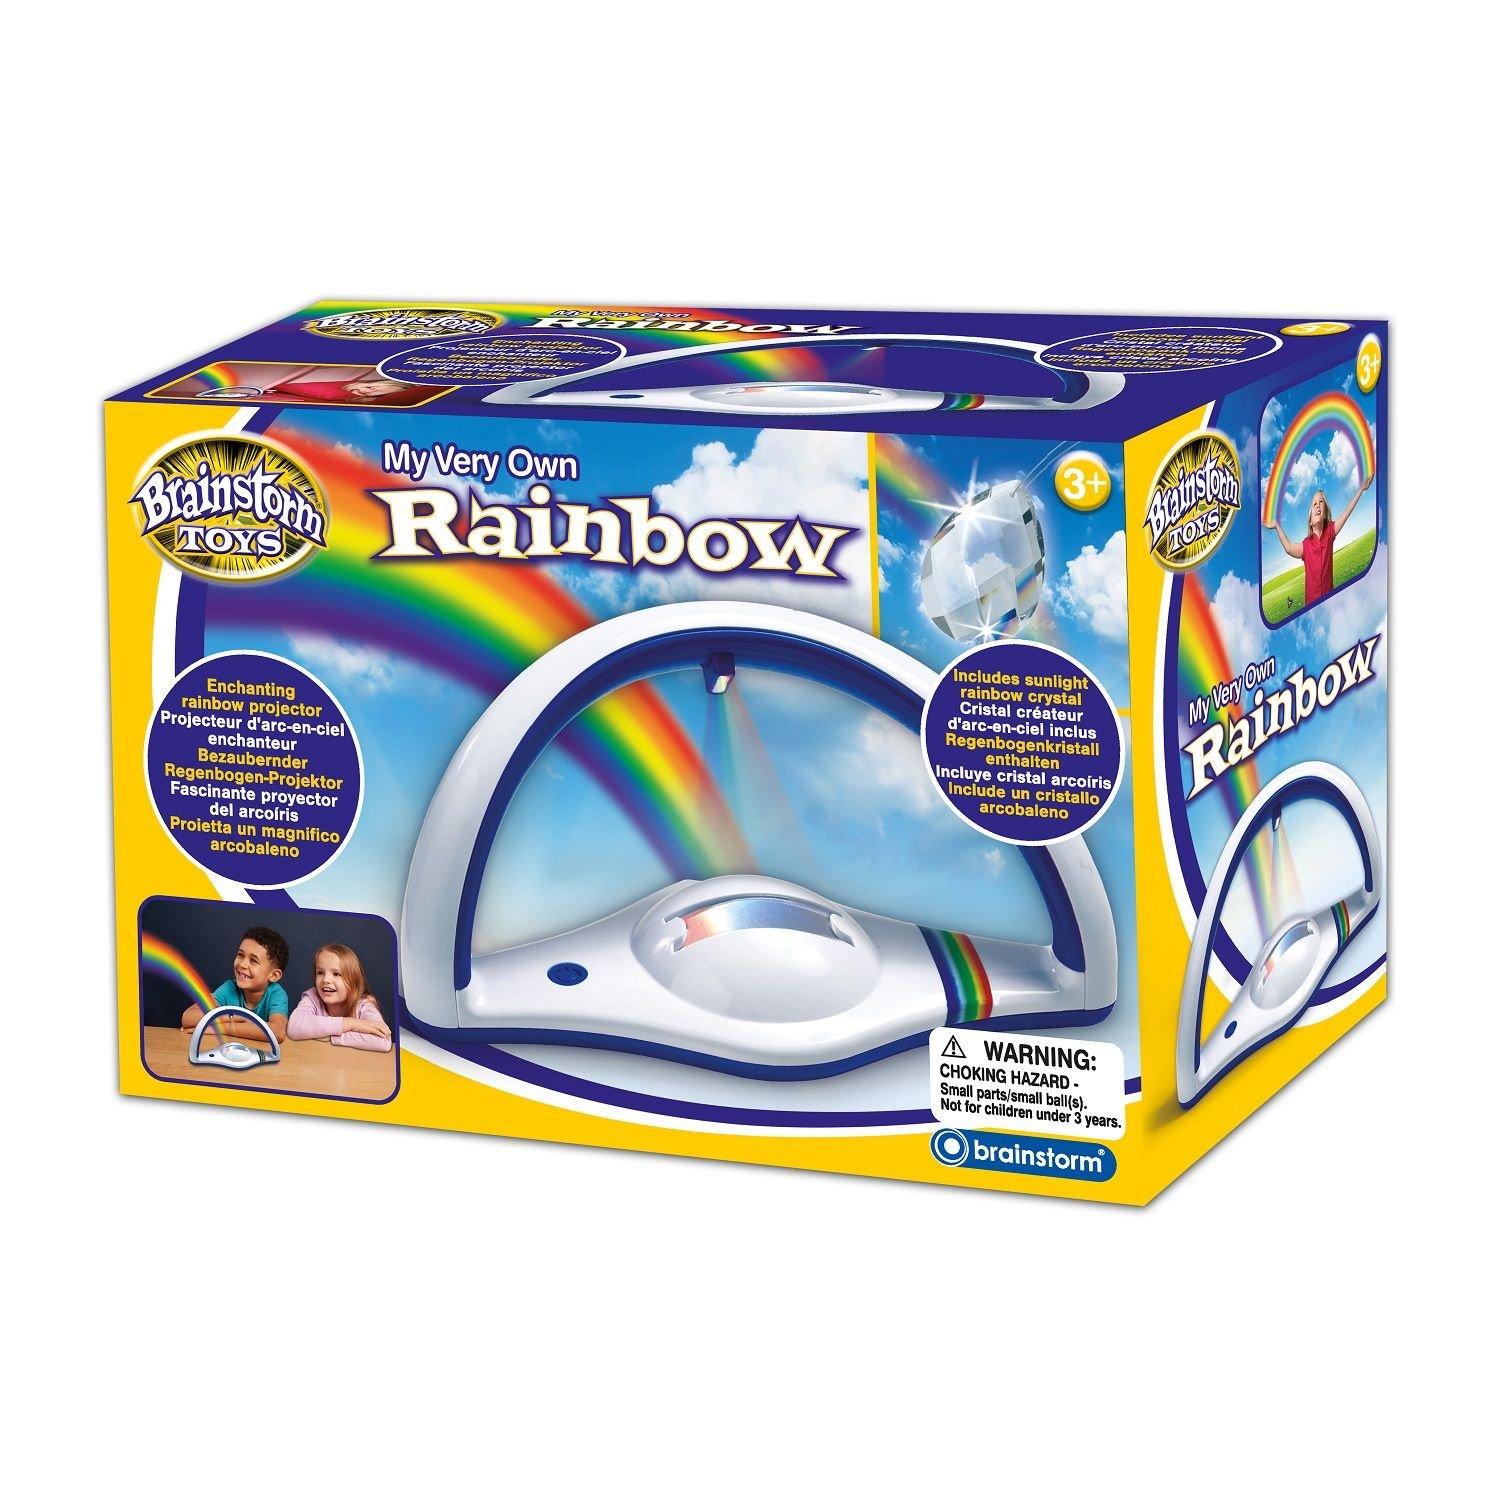 My Very Own Rainbow Toys Brainstorm 